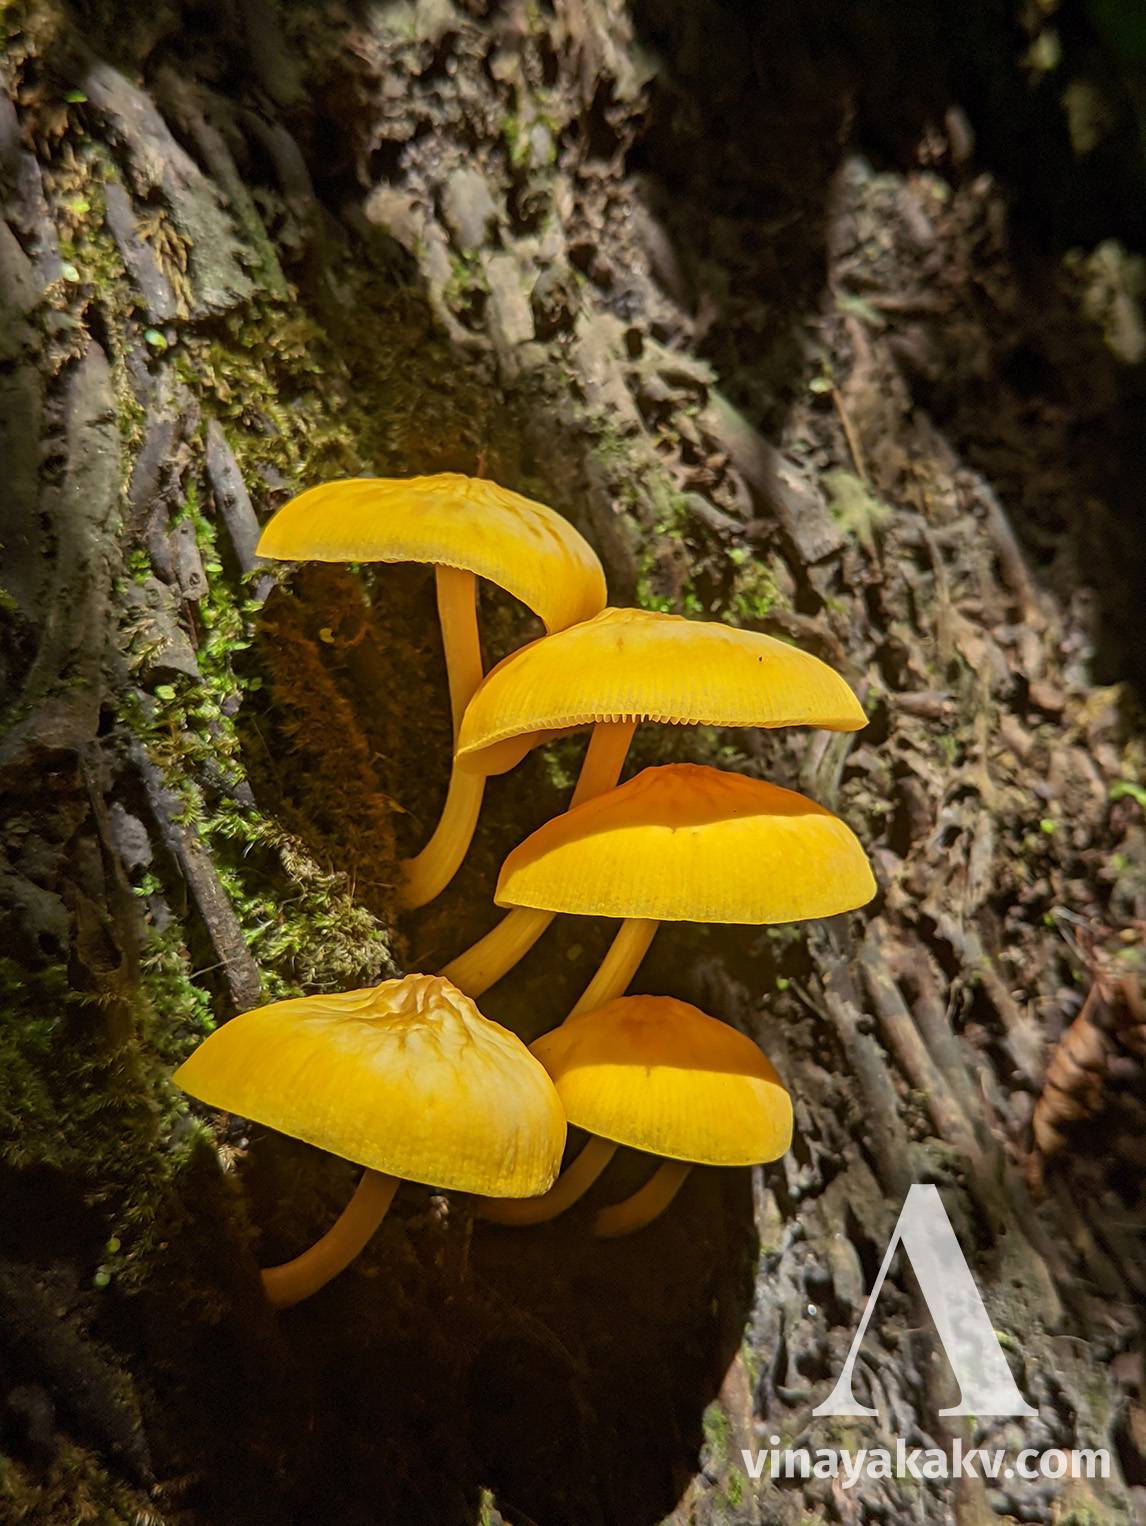 Bright, attractive fungi on a tree stump